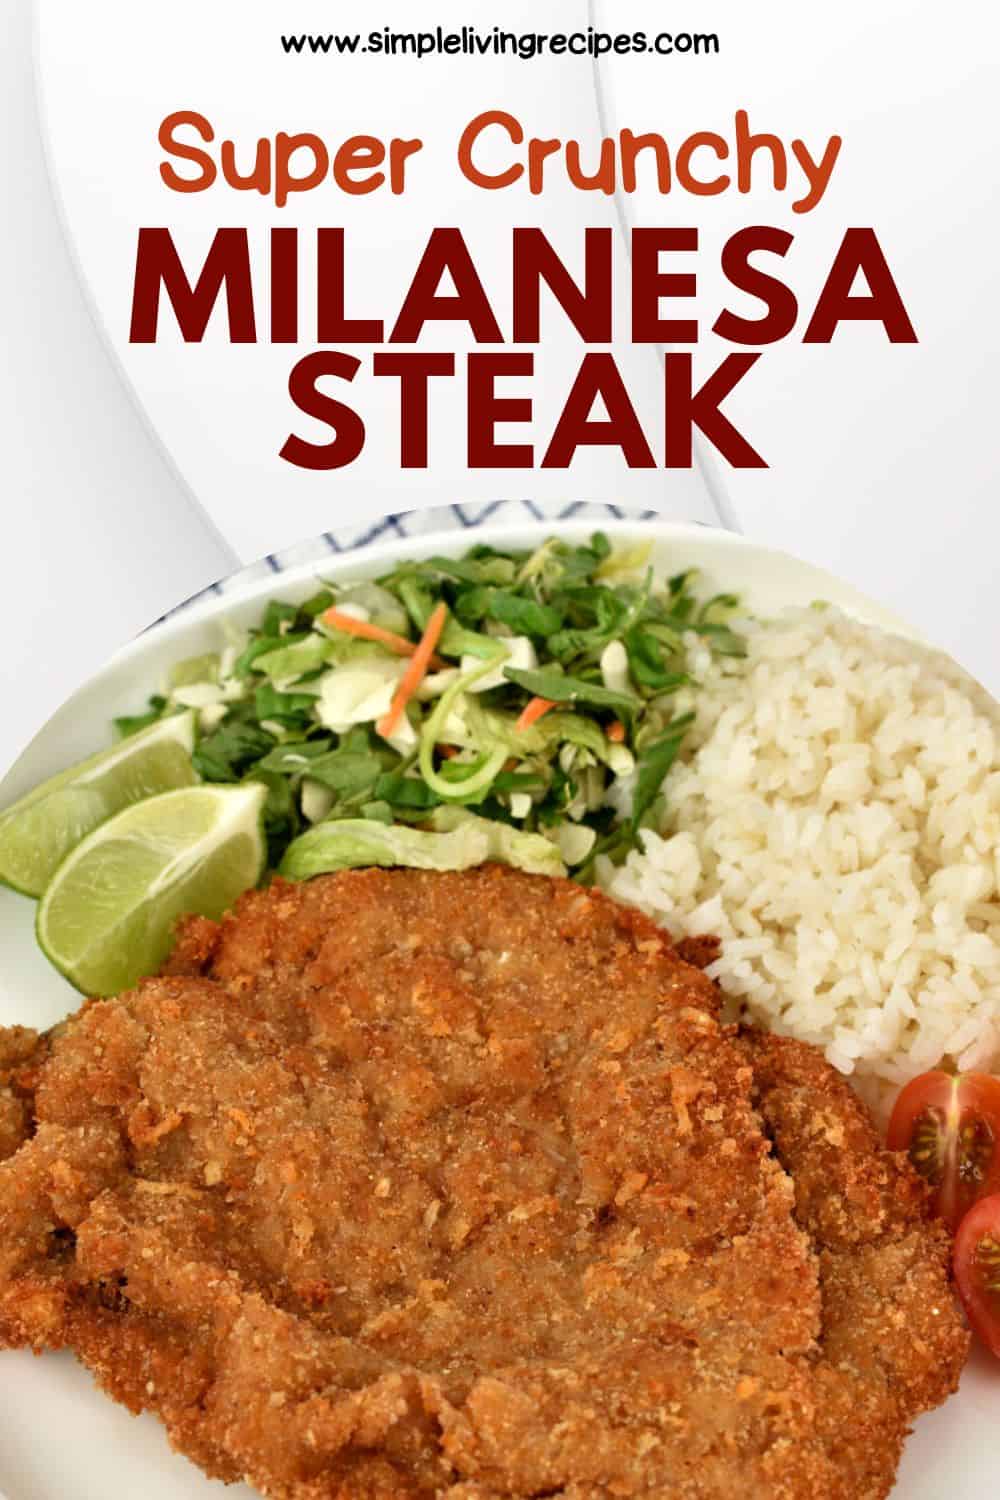 Milanesa steak image to pin in Pinterest.